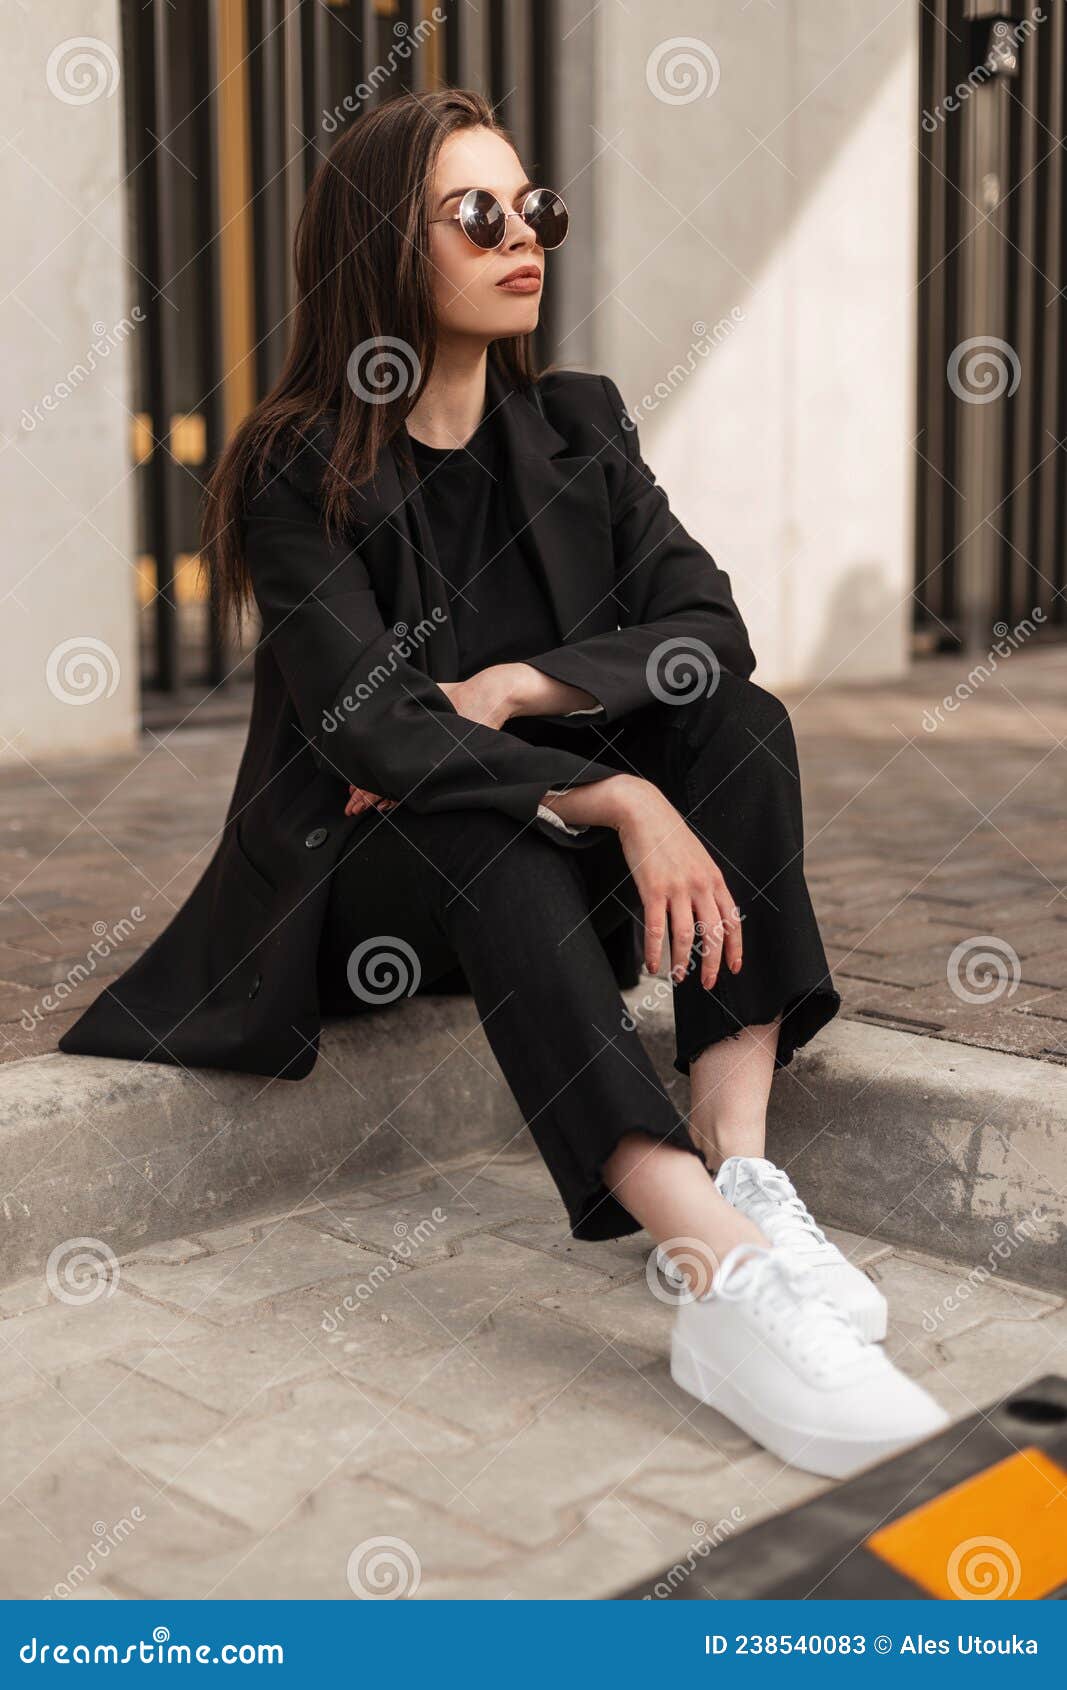 Elegante Jovencita Linda Con Ropa De Calle Negra De Moda Con Pantalones a  La Vista Y Zapatillas Blancas Sentadas En La Calle Imagen de archivo -  Imagen de ciudad, lifestyle: 238540083